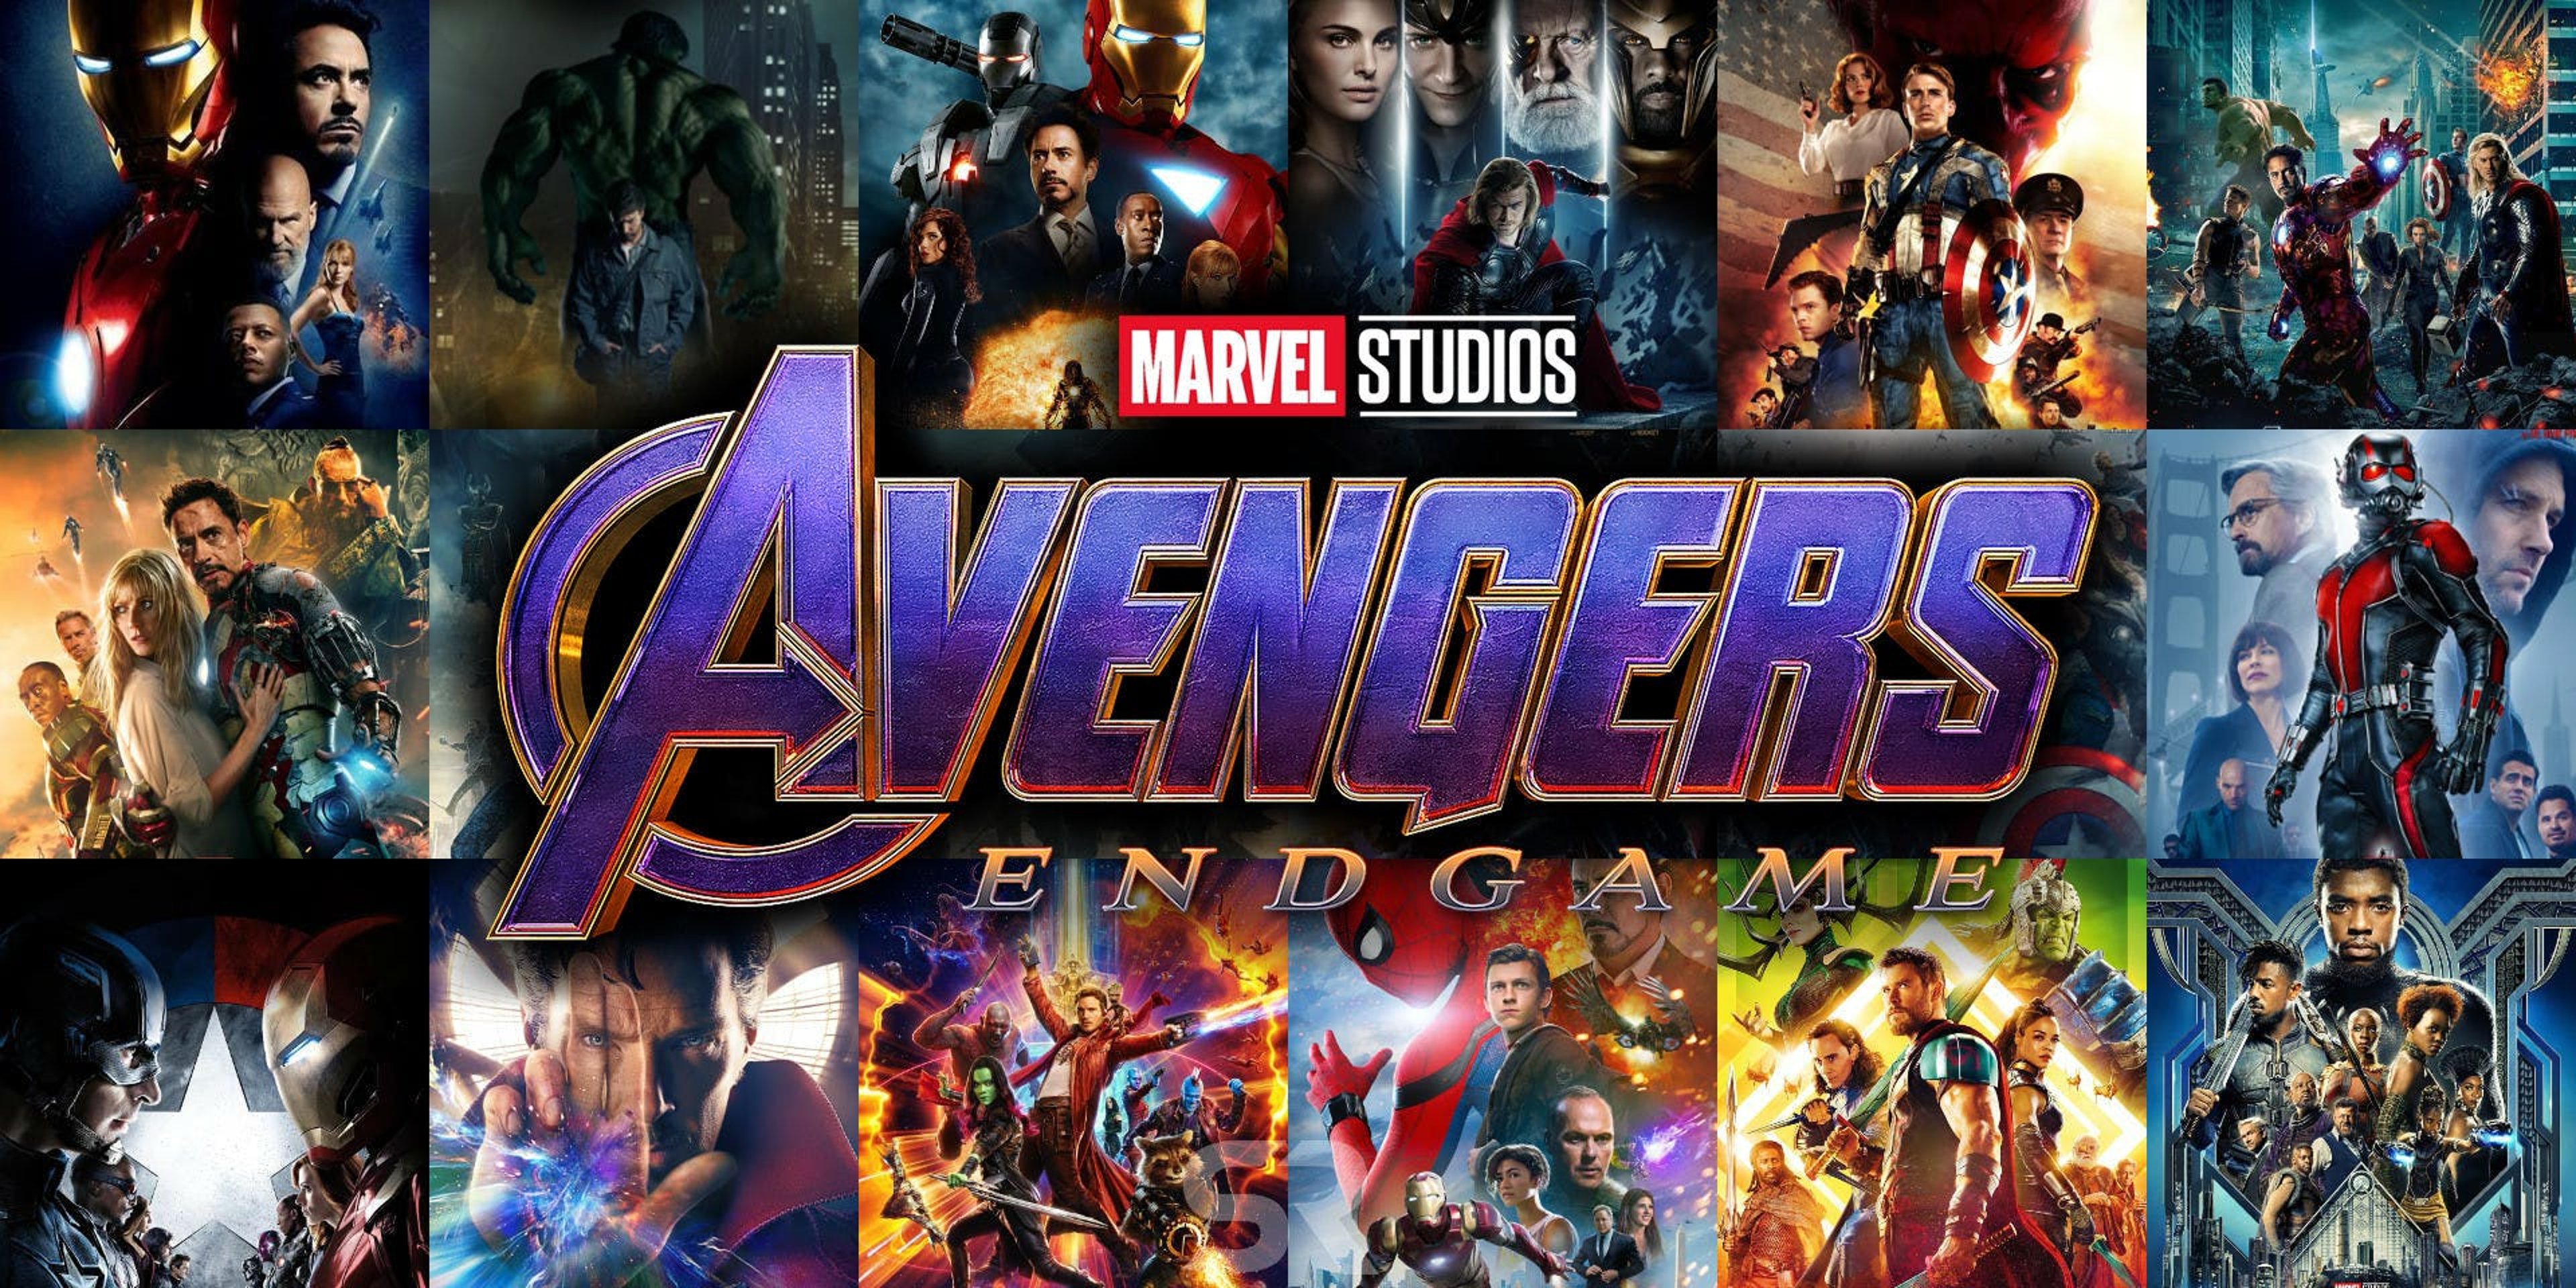 Avengers: ENDGAME – pareri a caldo di un capolavoro assoluto! NO SPOILER Cover